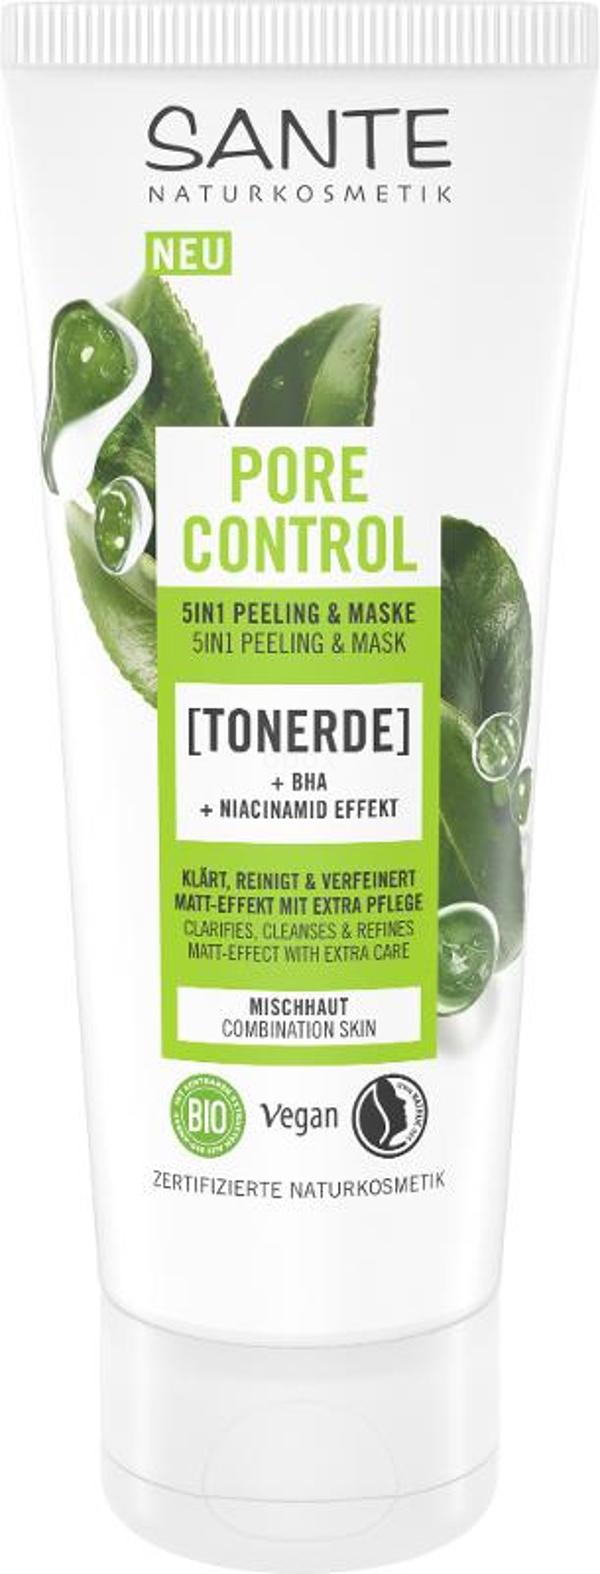 Produktfoto zu Pore Control 5in1 Peeling & Maske Tonerde 100ml